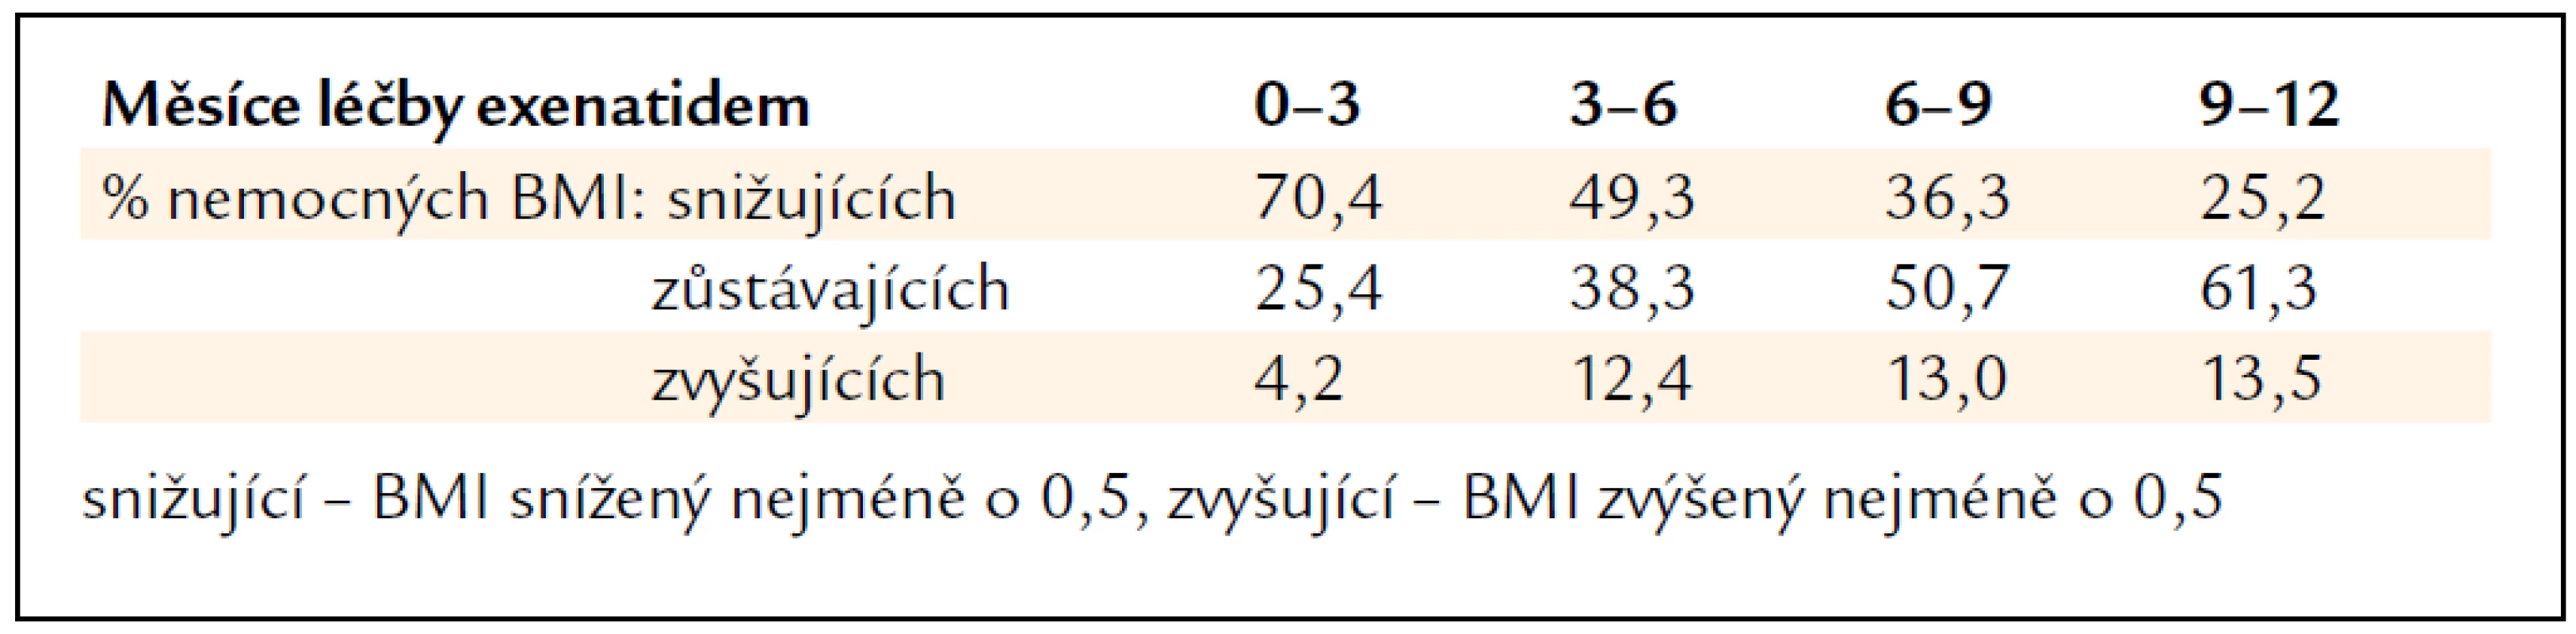 Procentuální podíl sledovaných nemocných podle změn BMI v čase.